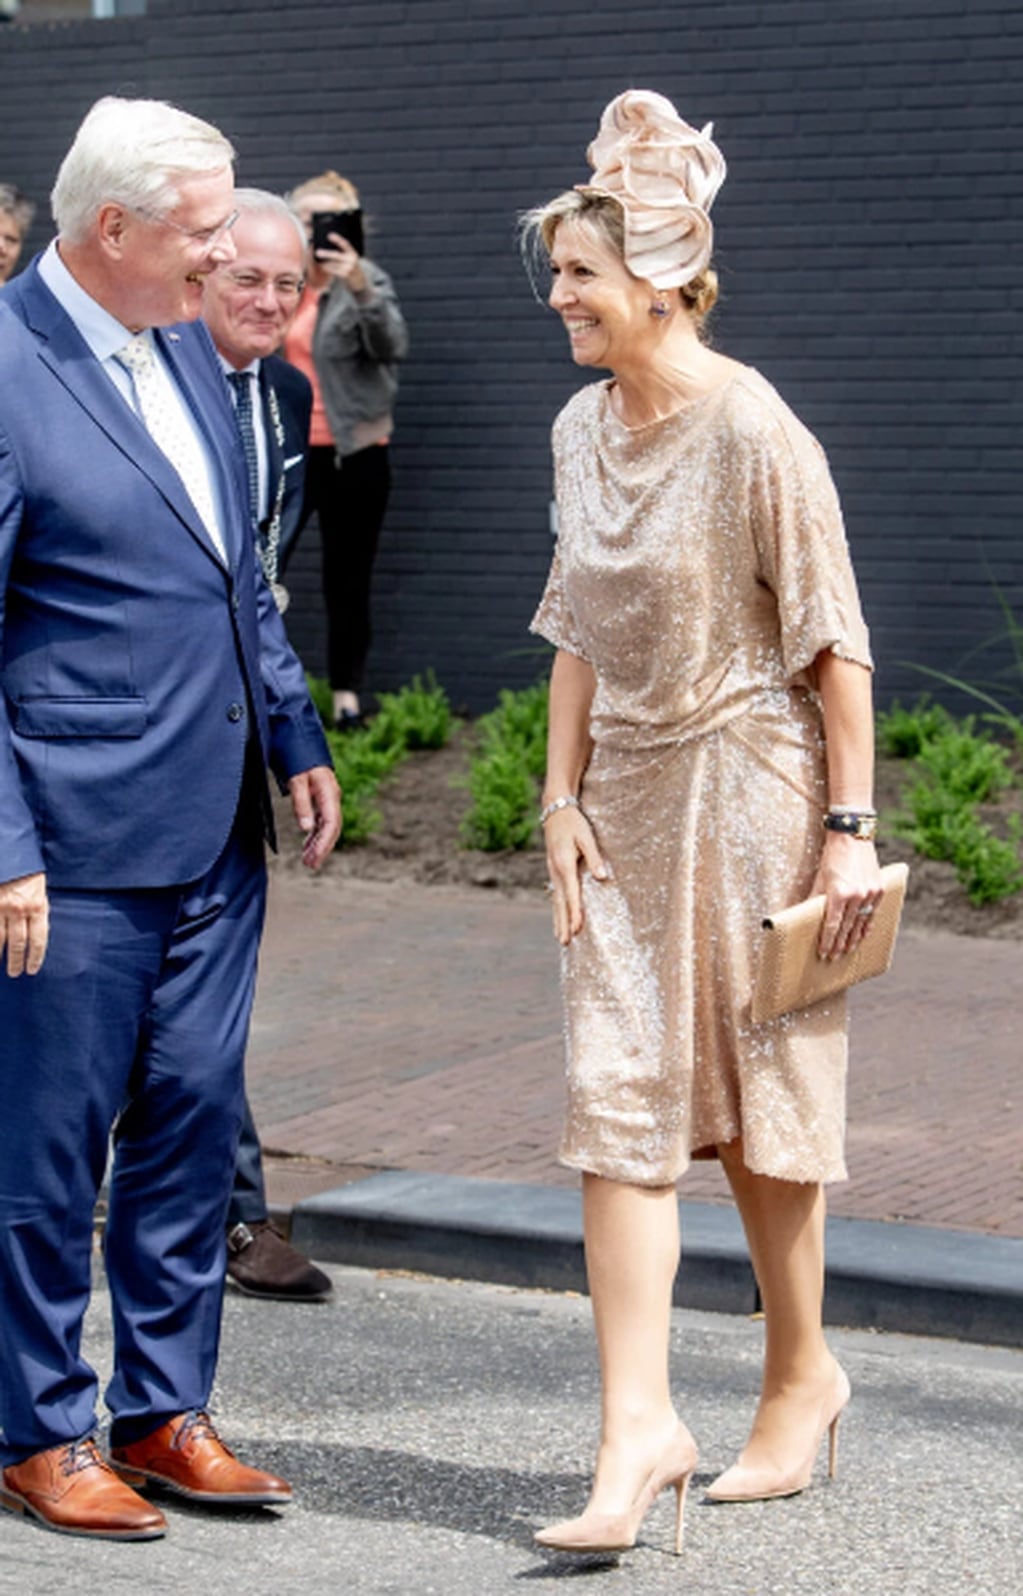 La monarca deslumbró con su imponente look brilloso que eligió para un evento formal en su país, Holanda.